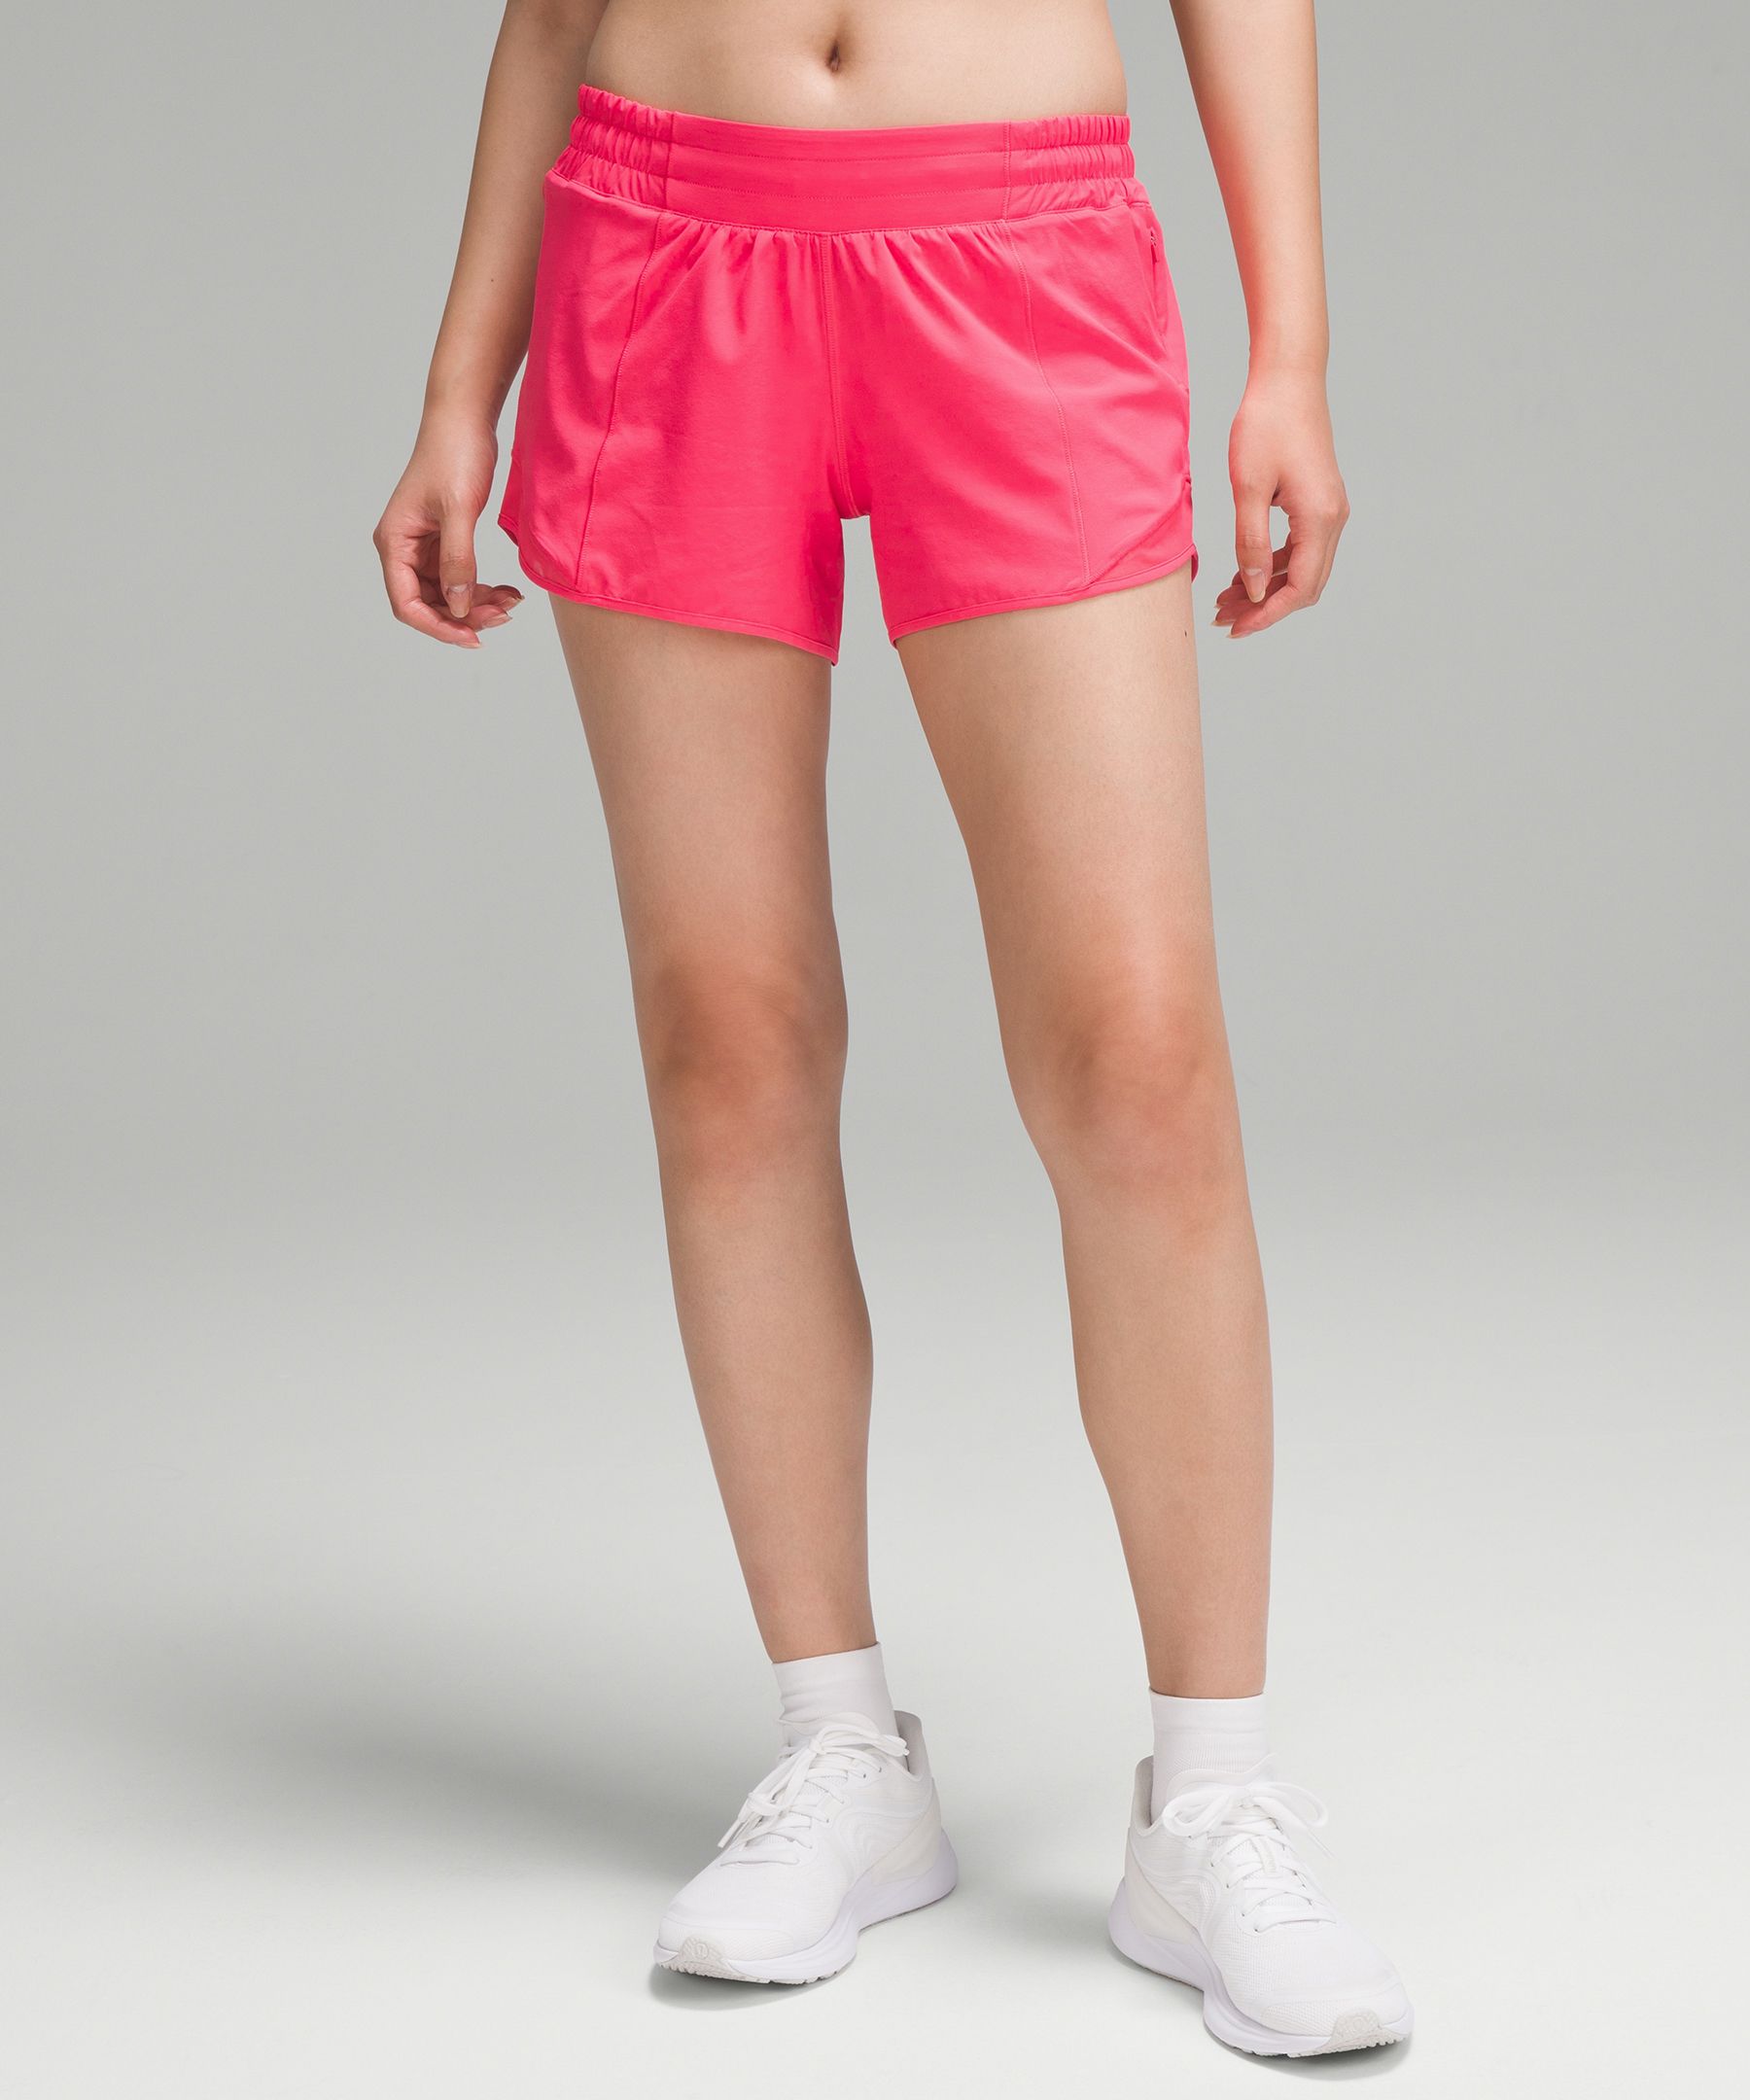 Lululemon Hotty Hot Low-rise Lined Shorts 4"